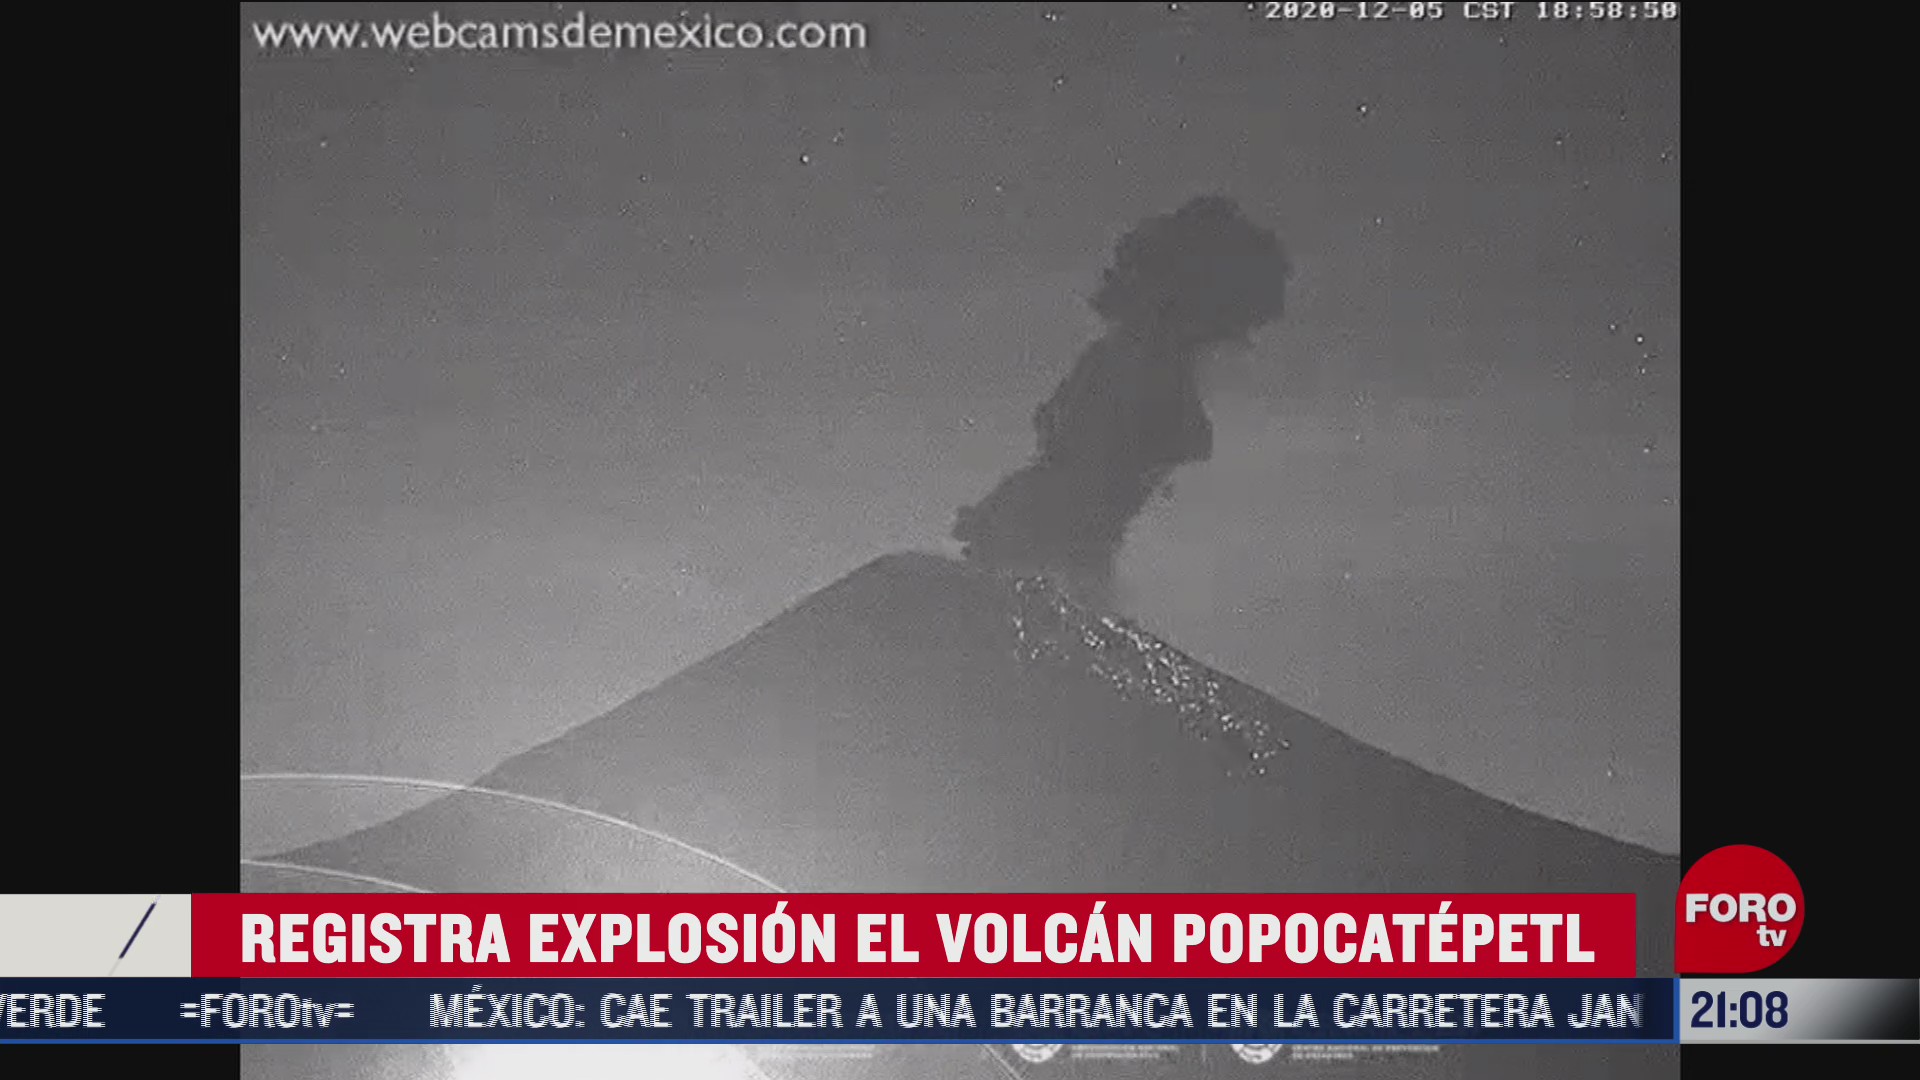 volcan popocatepetl registra explosion